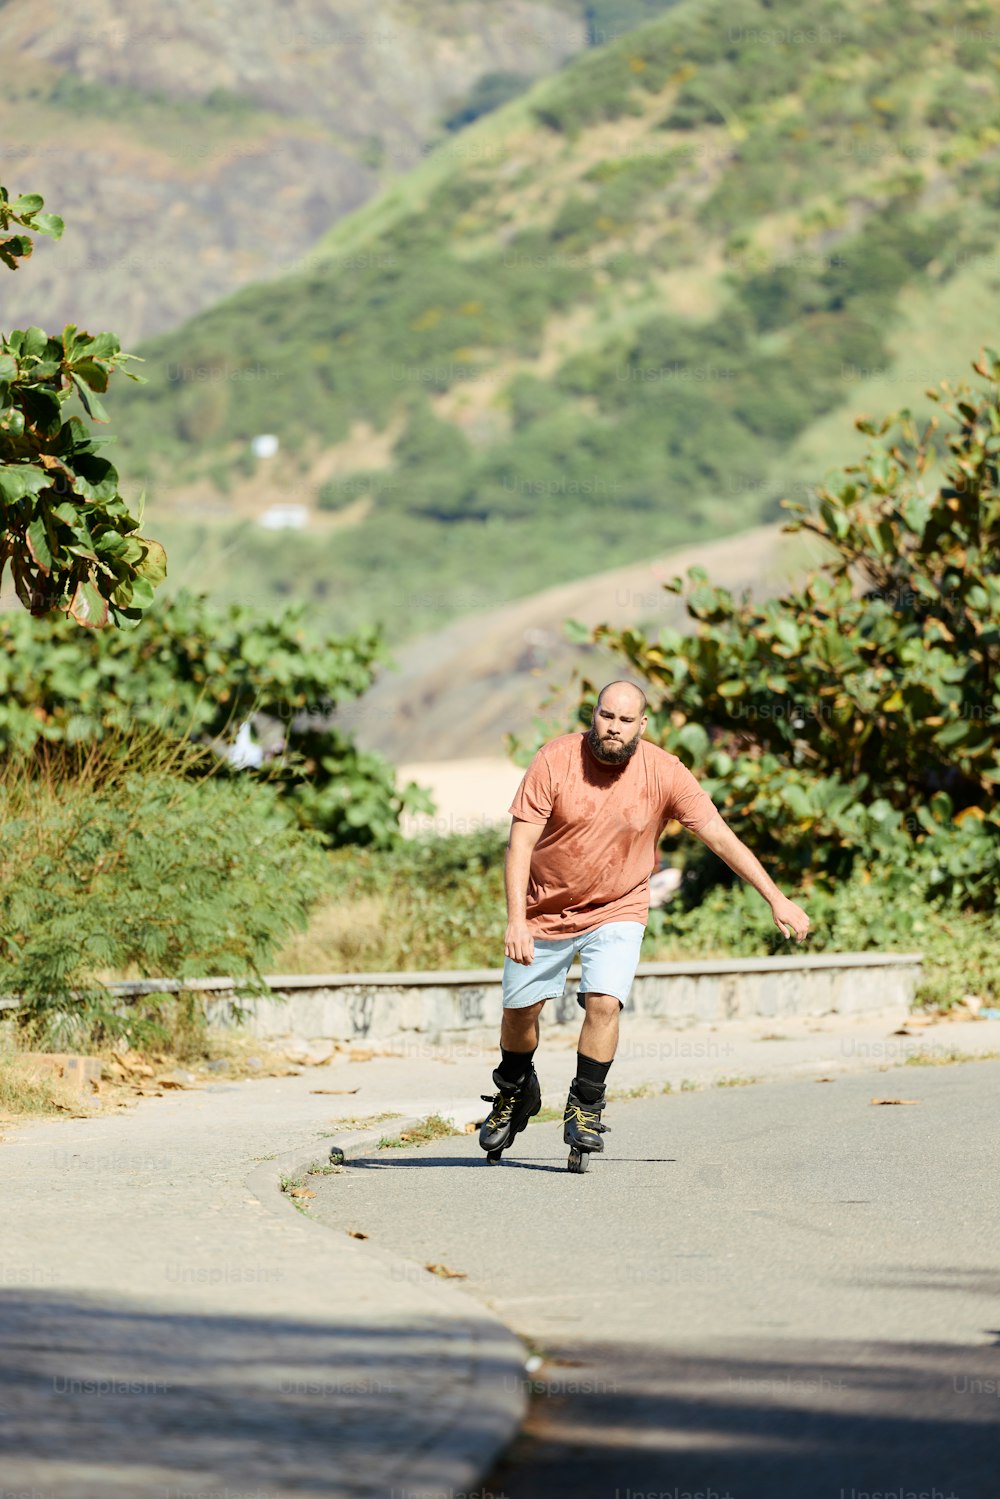 un homme faisant du skateboard dans une rue